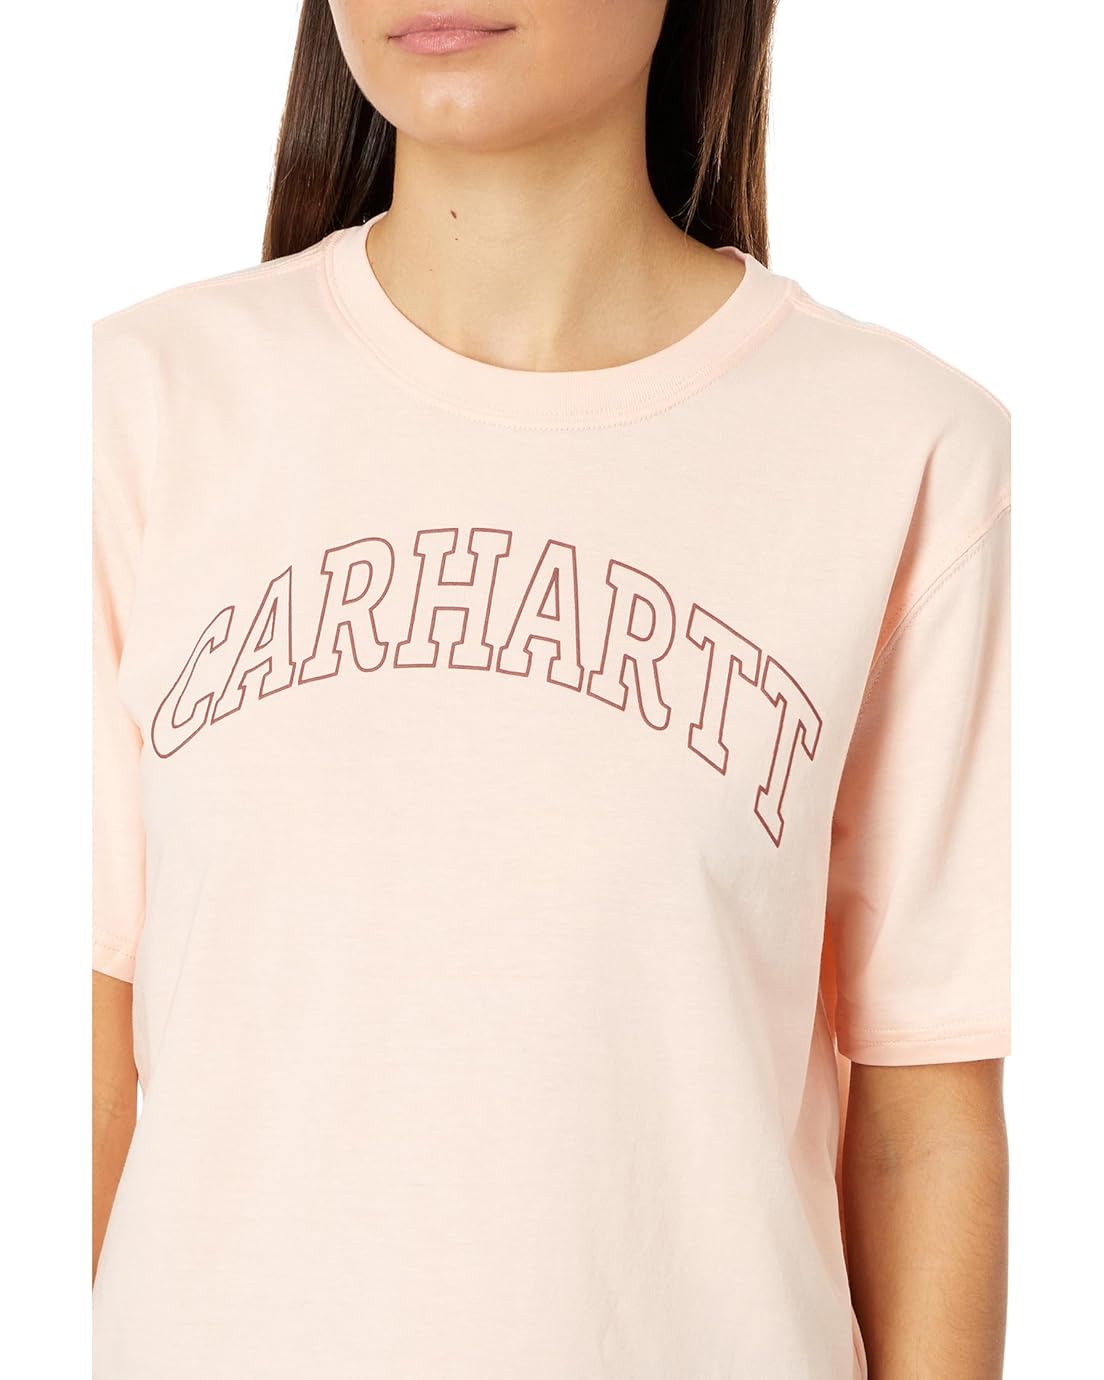 칼하트 Carhartt Loose Fit Lightweight Short Sleeve Carhartt Graphic T-Shirt